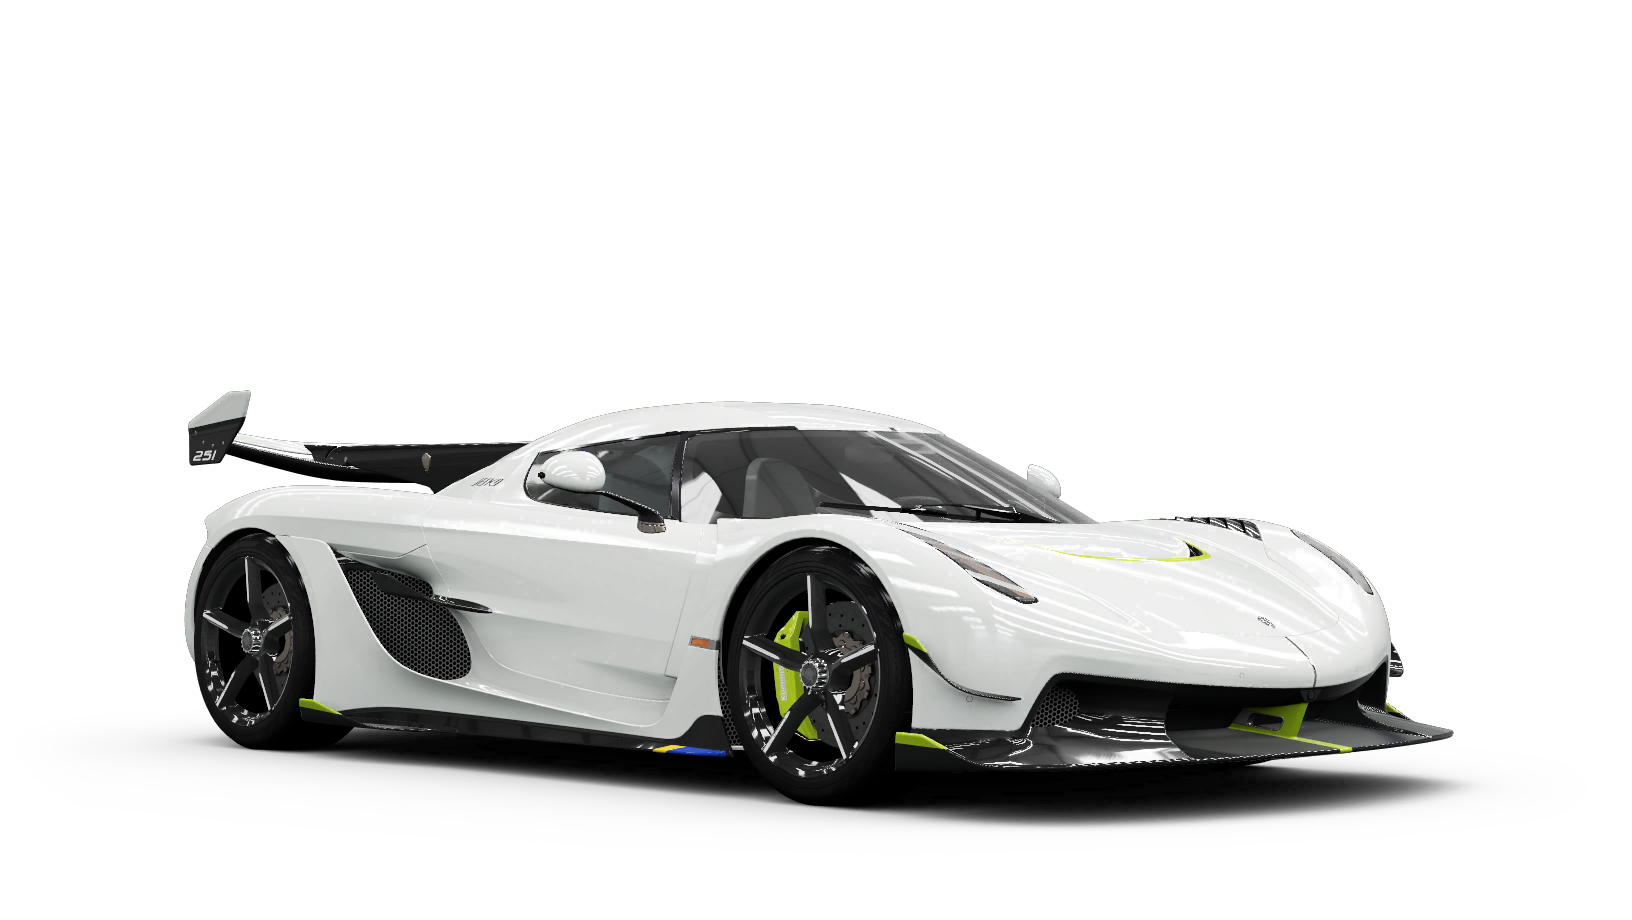 Forza Motorsport 7 - Wikipedia